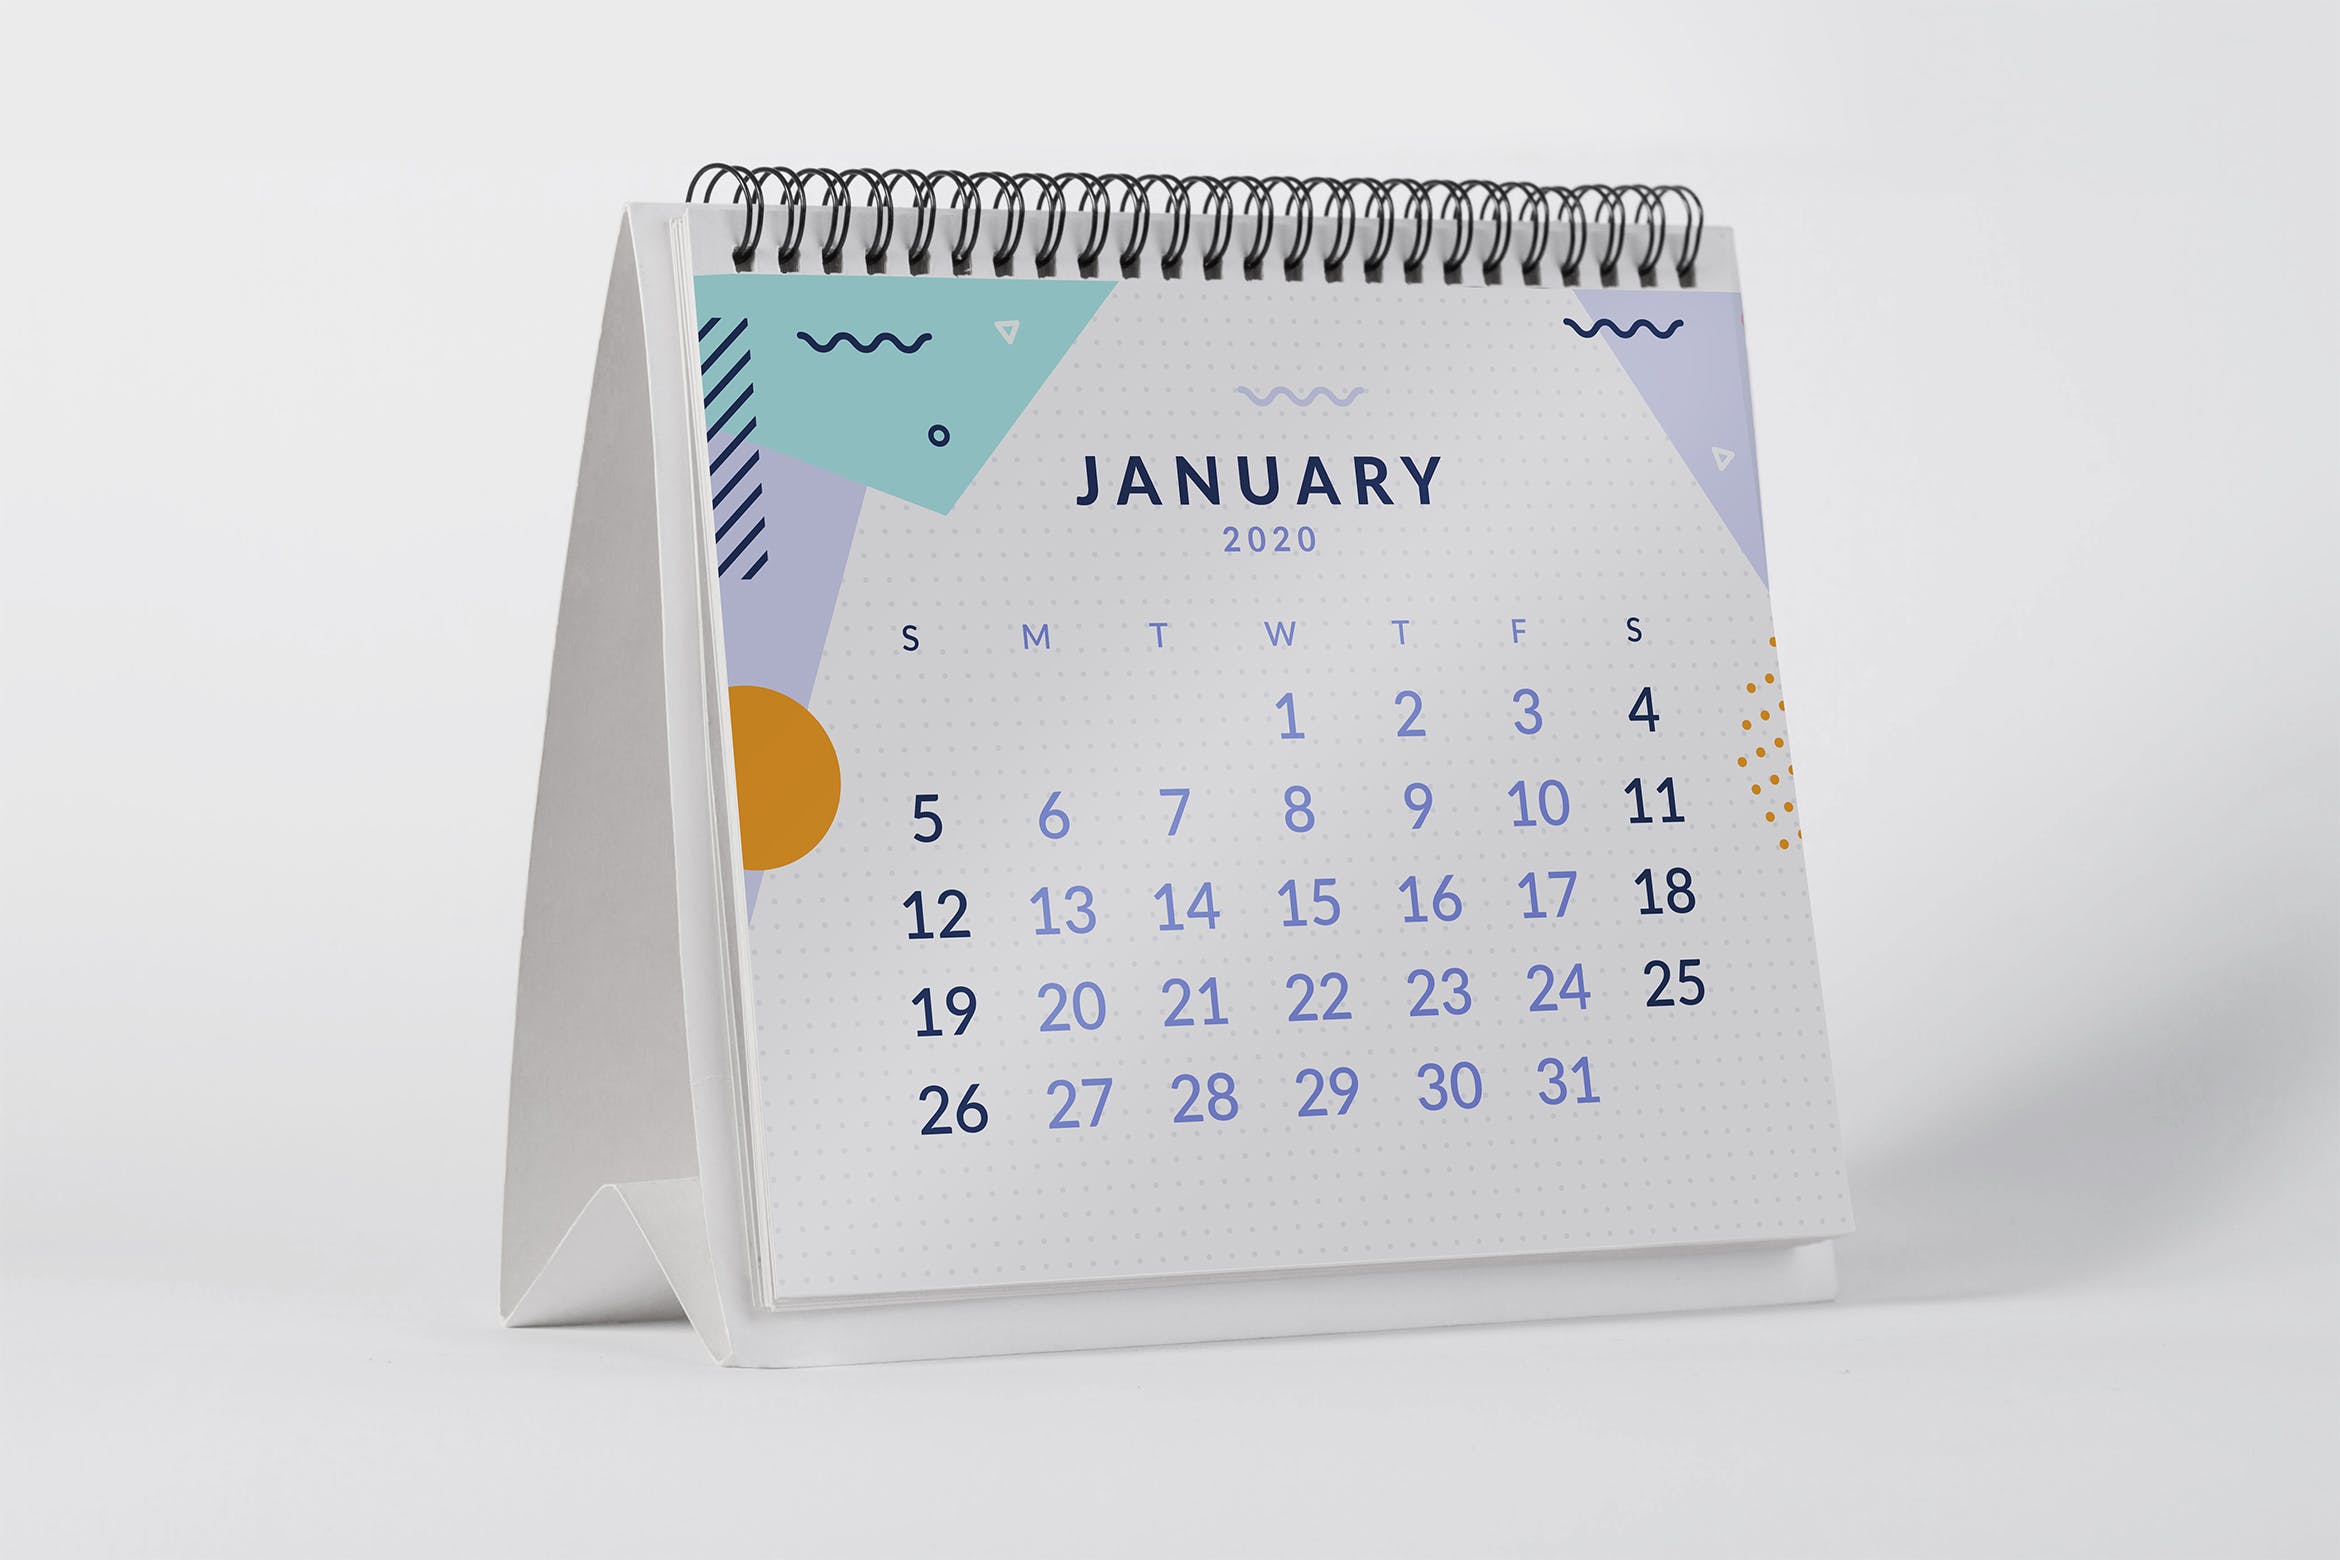 2020年桌面日历设计样机蚂蚁素材精选模板 2020 Desktop Calendar Mock Up插图